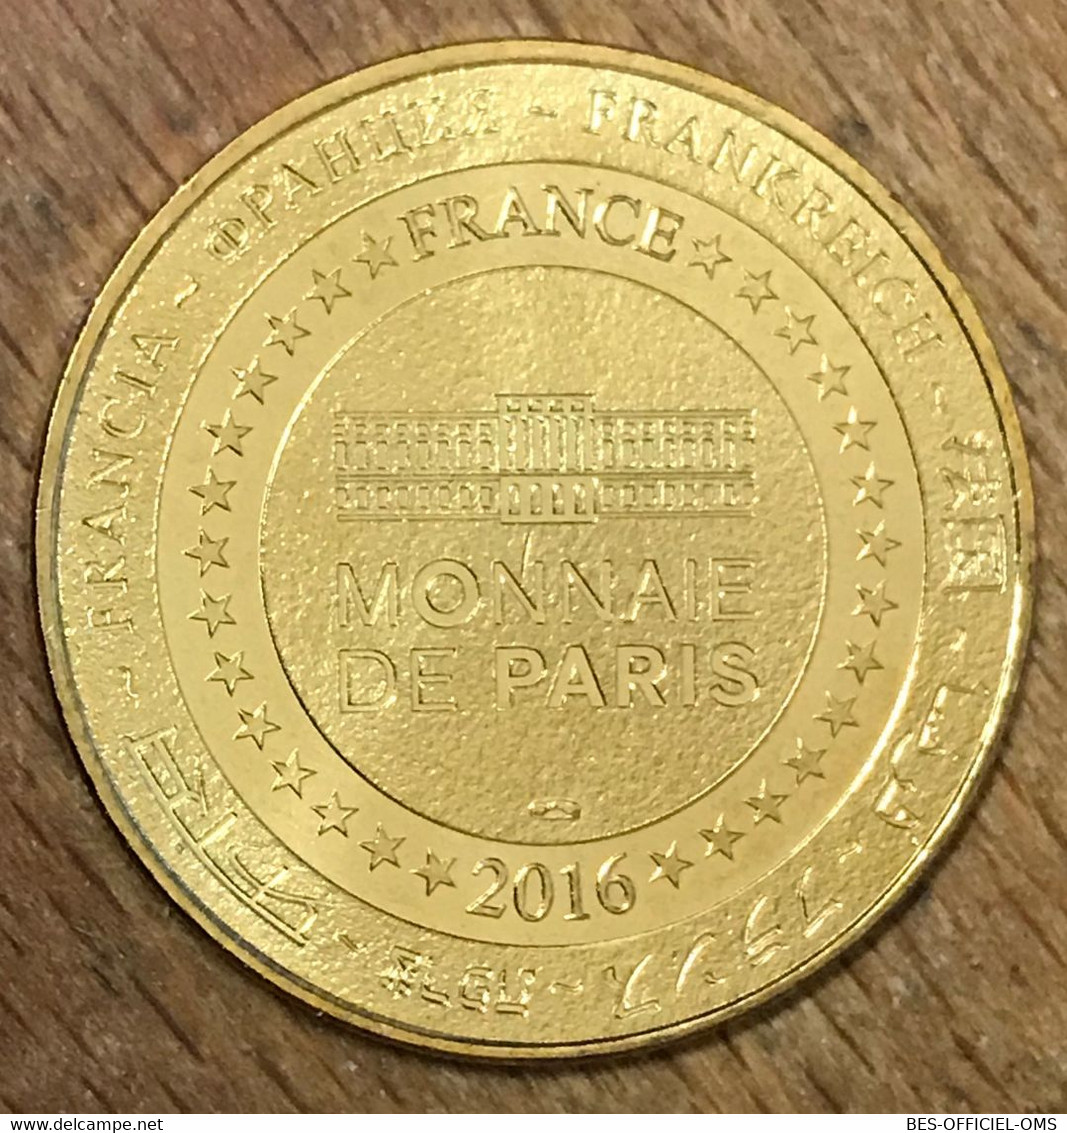 85 PUY DU FOU LE DERNIER PANACHE MDP 2016 MÉDAILLE MONNAIE DE PARIS JETON TOURISTIQUE MEDALS COINS TOKENS - 2016